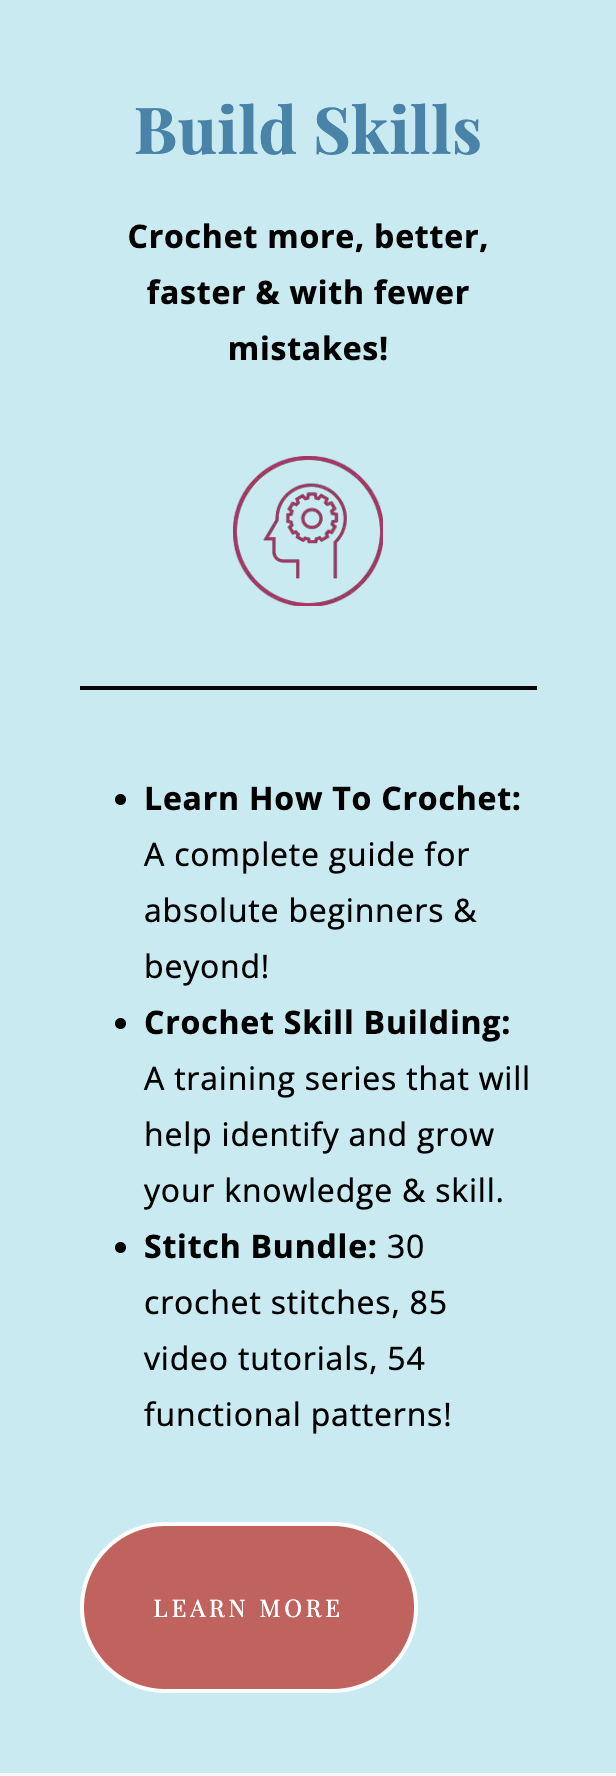 Crochet Skill Building - American Crochet Association